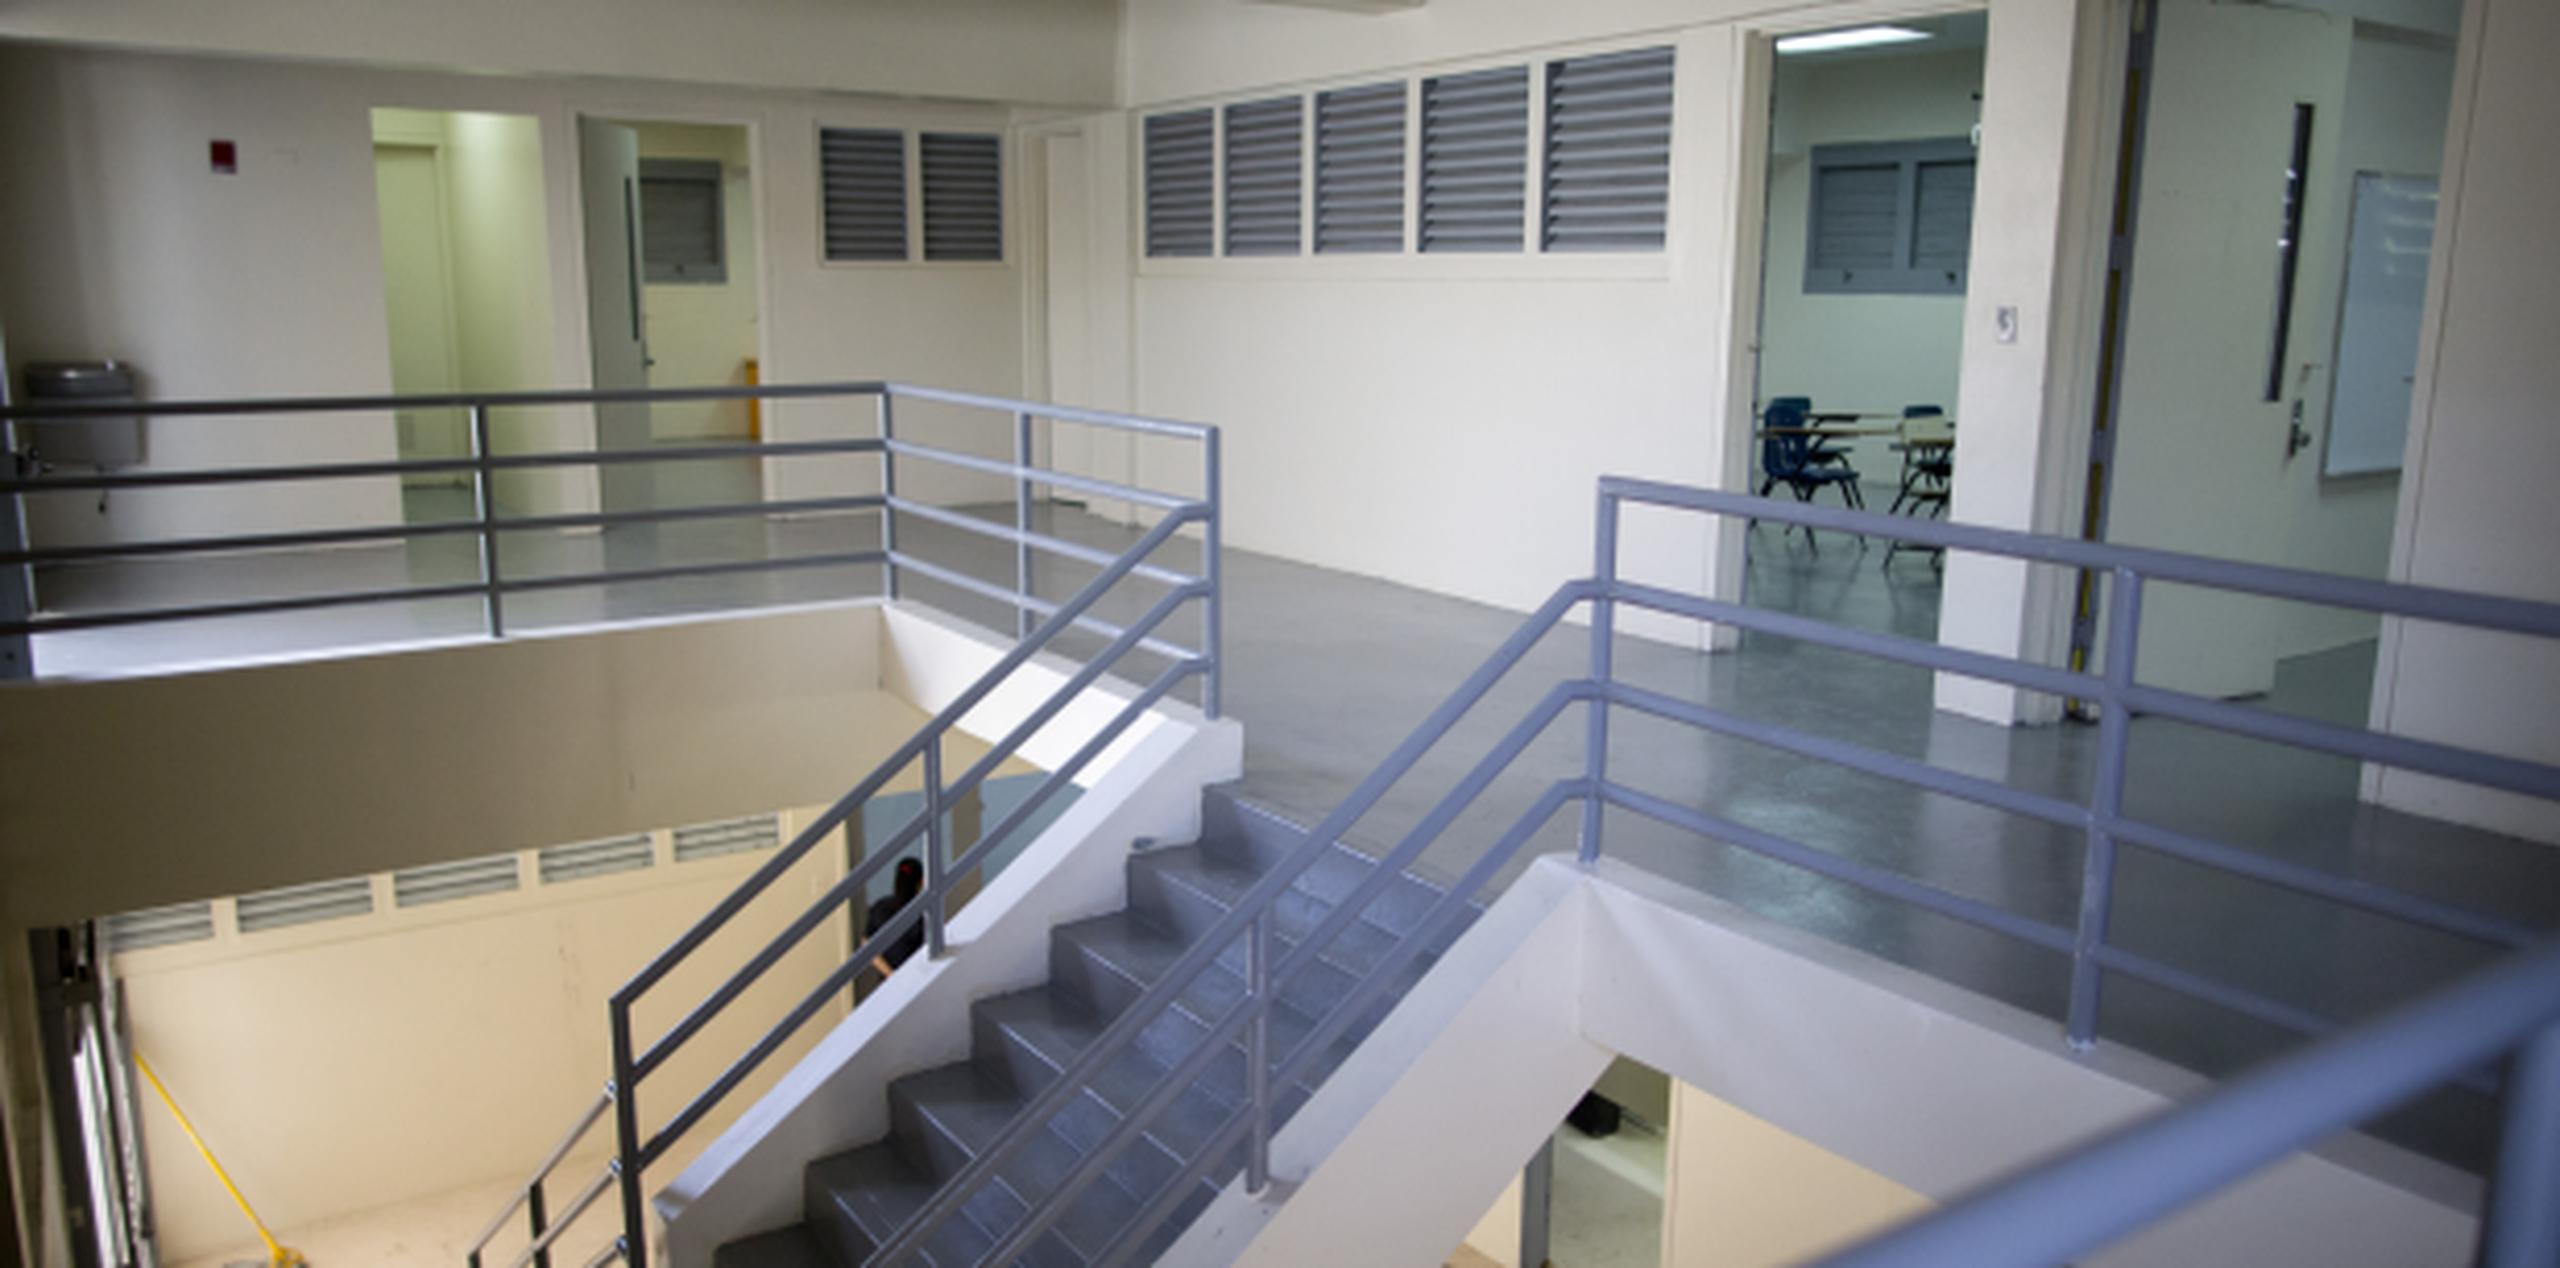 La instalación que ubica en la zona Industrial Luchetti en Bayamón se habilitó en una antigua institución juvenil a un costo de $200,000. (francisco.rodriguez@gfrmedia.com)